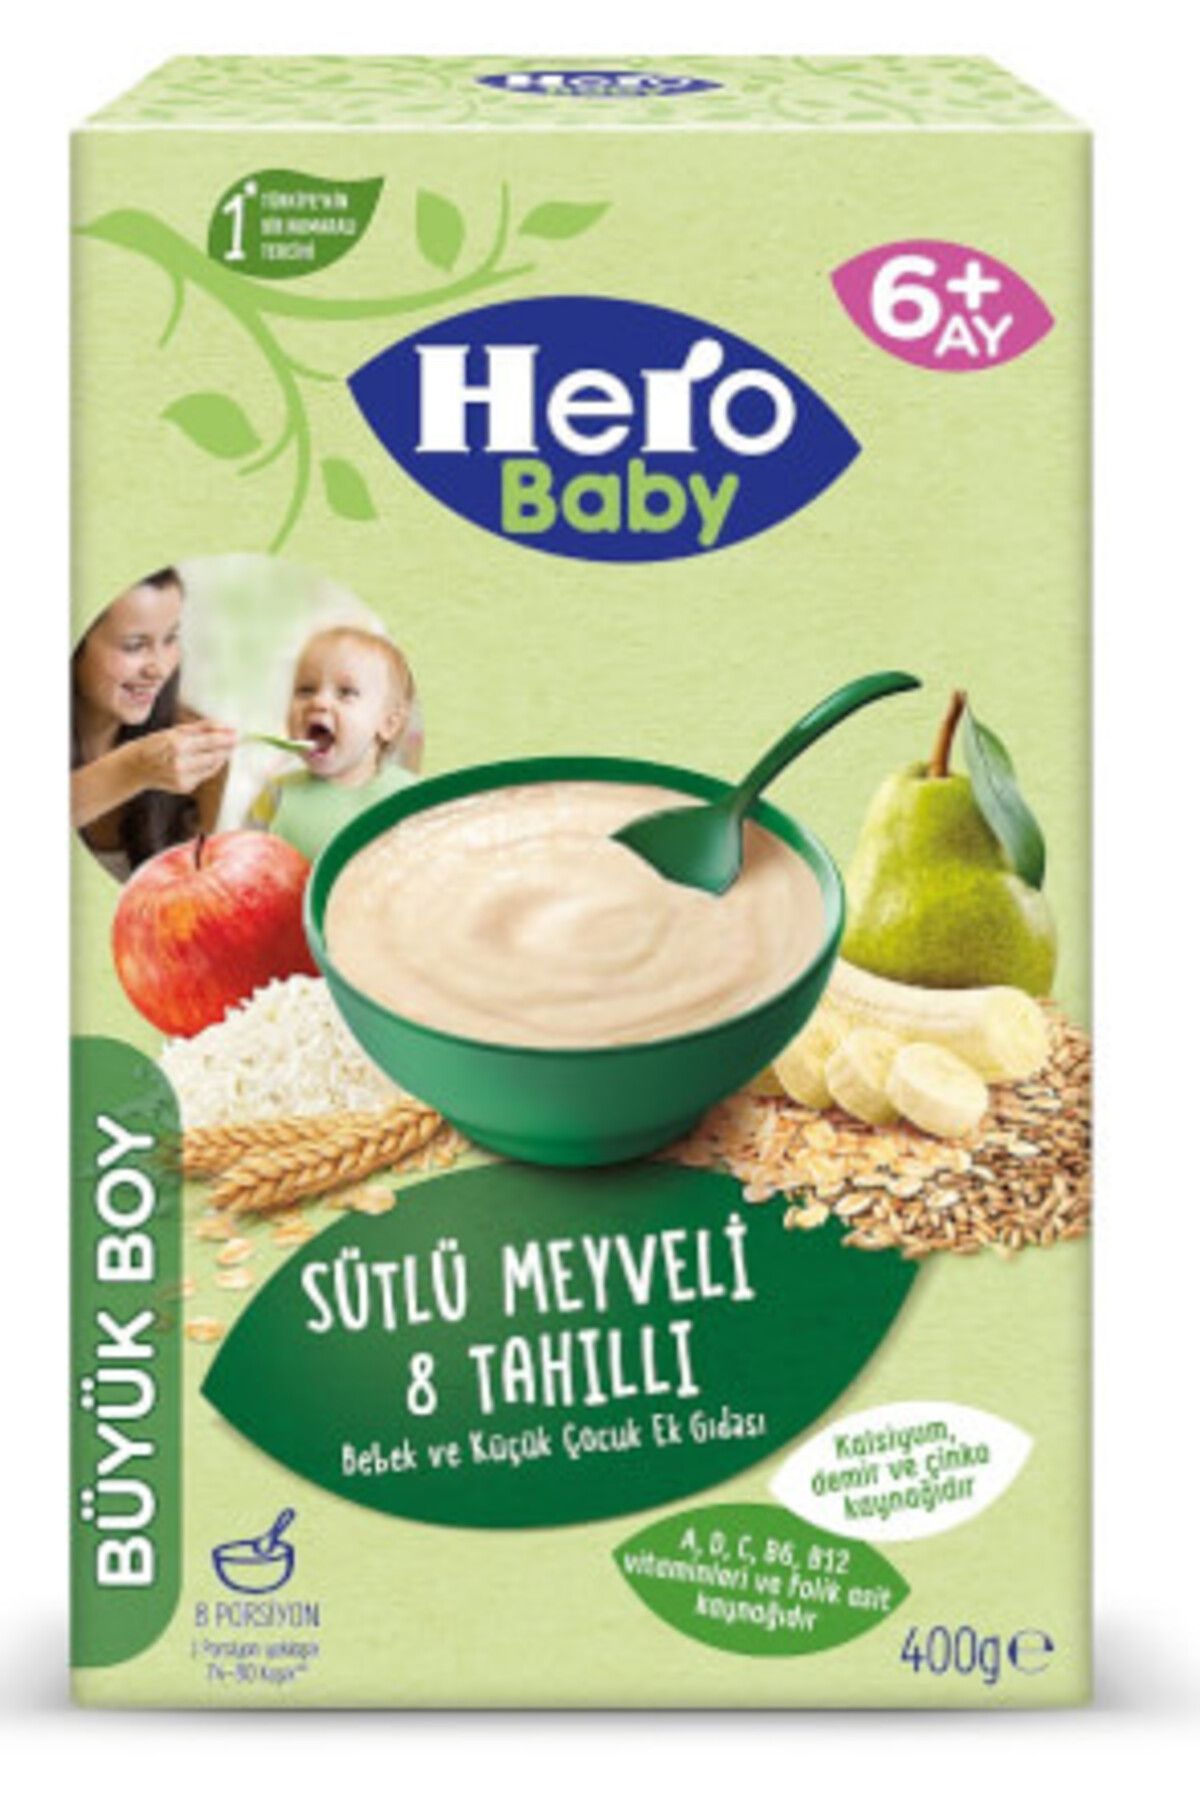 Hero ( 2 ADET ) Hero Baby Meyveli Sütlü 8 Tahıllı Mama 400 Gr